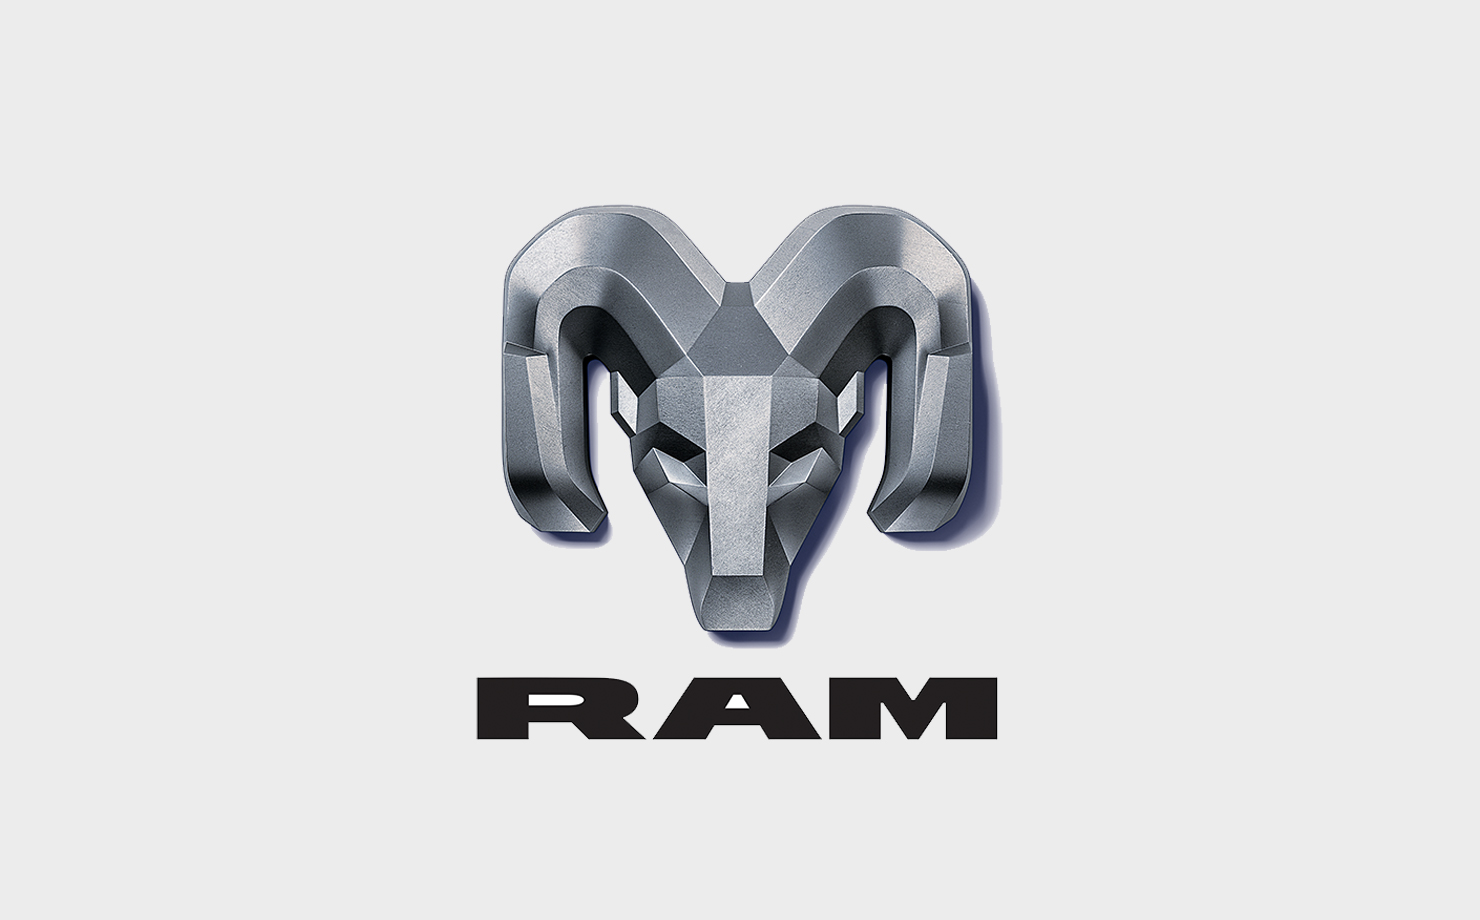 Image of Ram logo